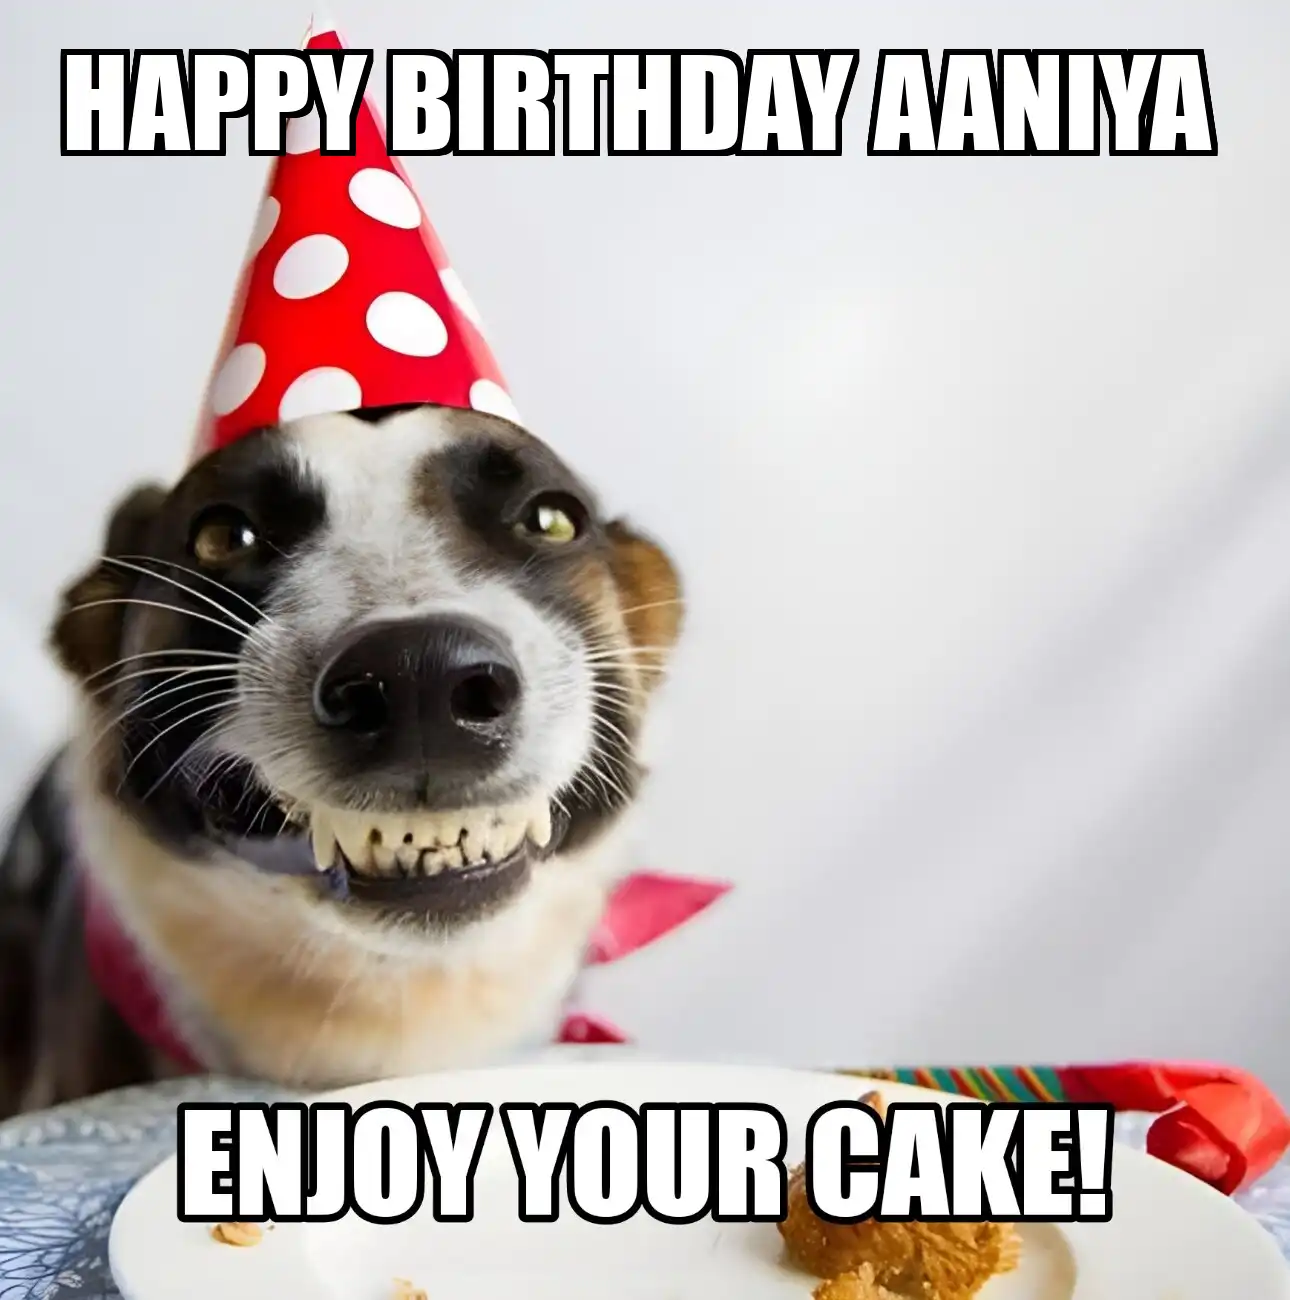 Happy Birthday Aaniya Enjoy Your Cake Dog Meme